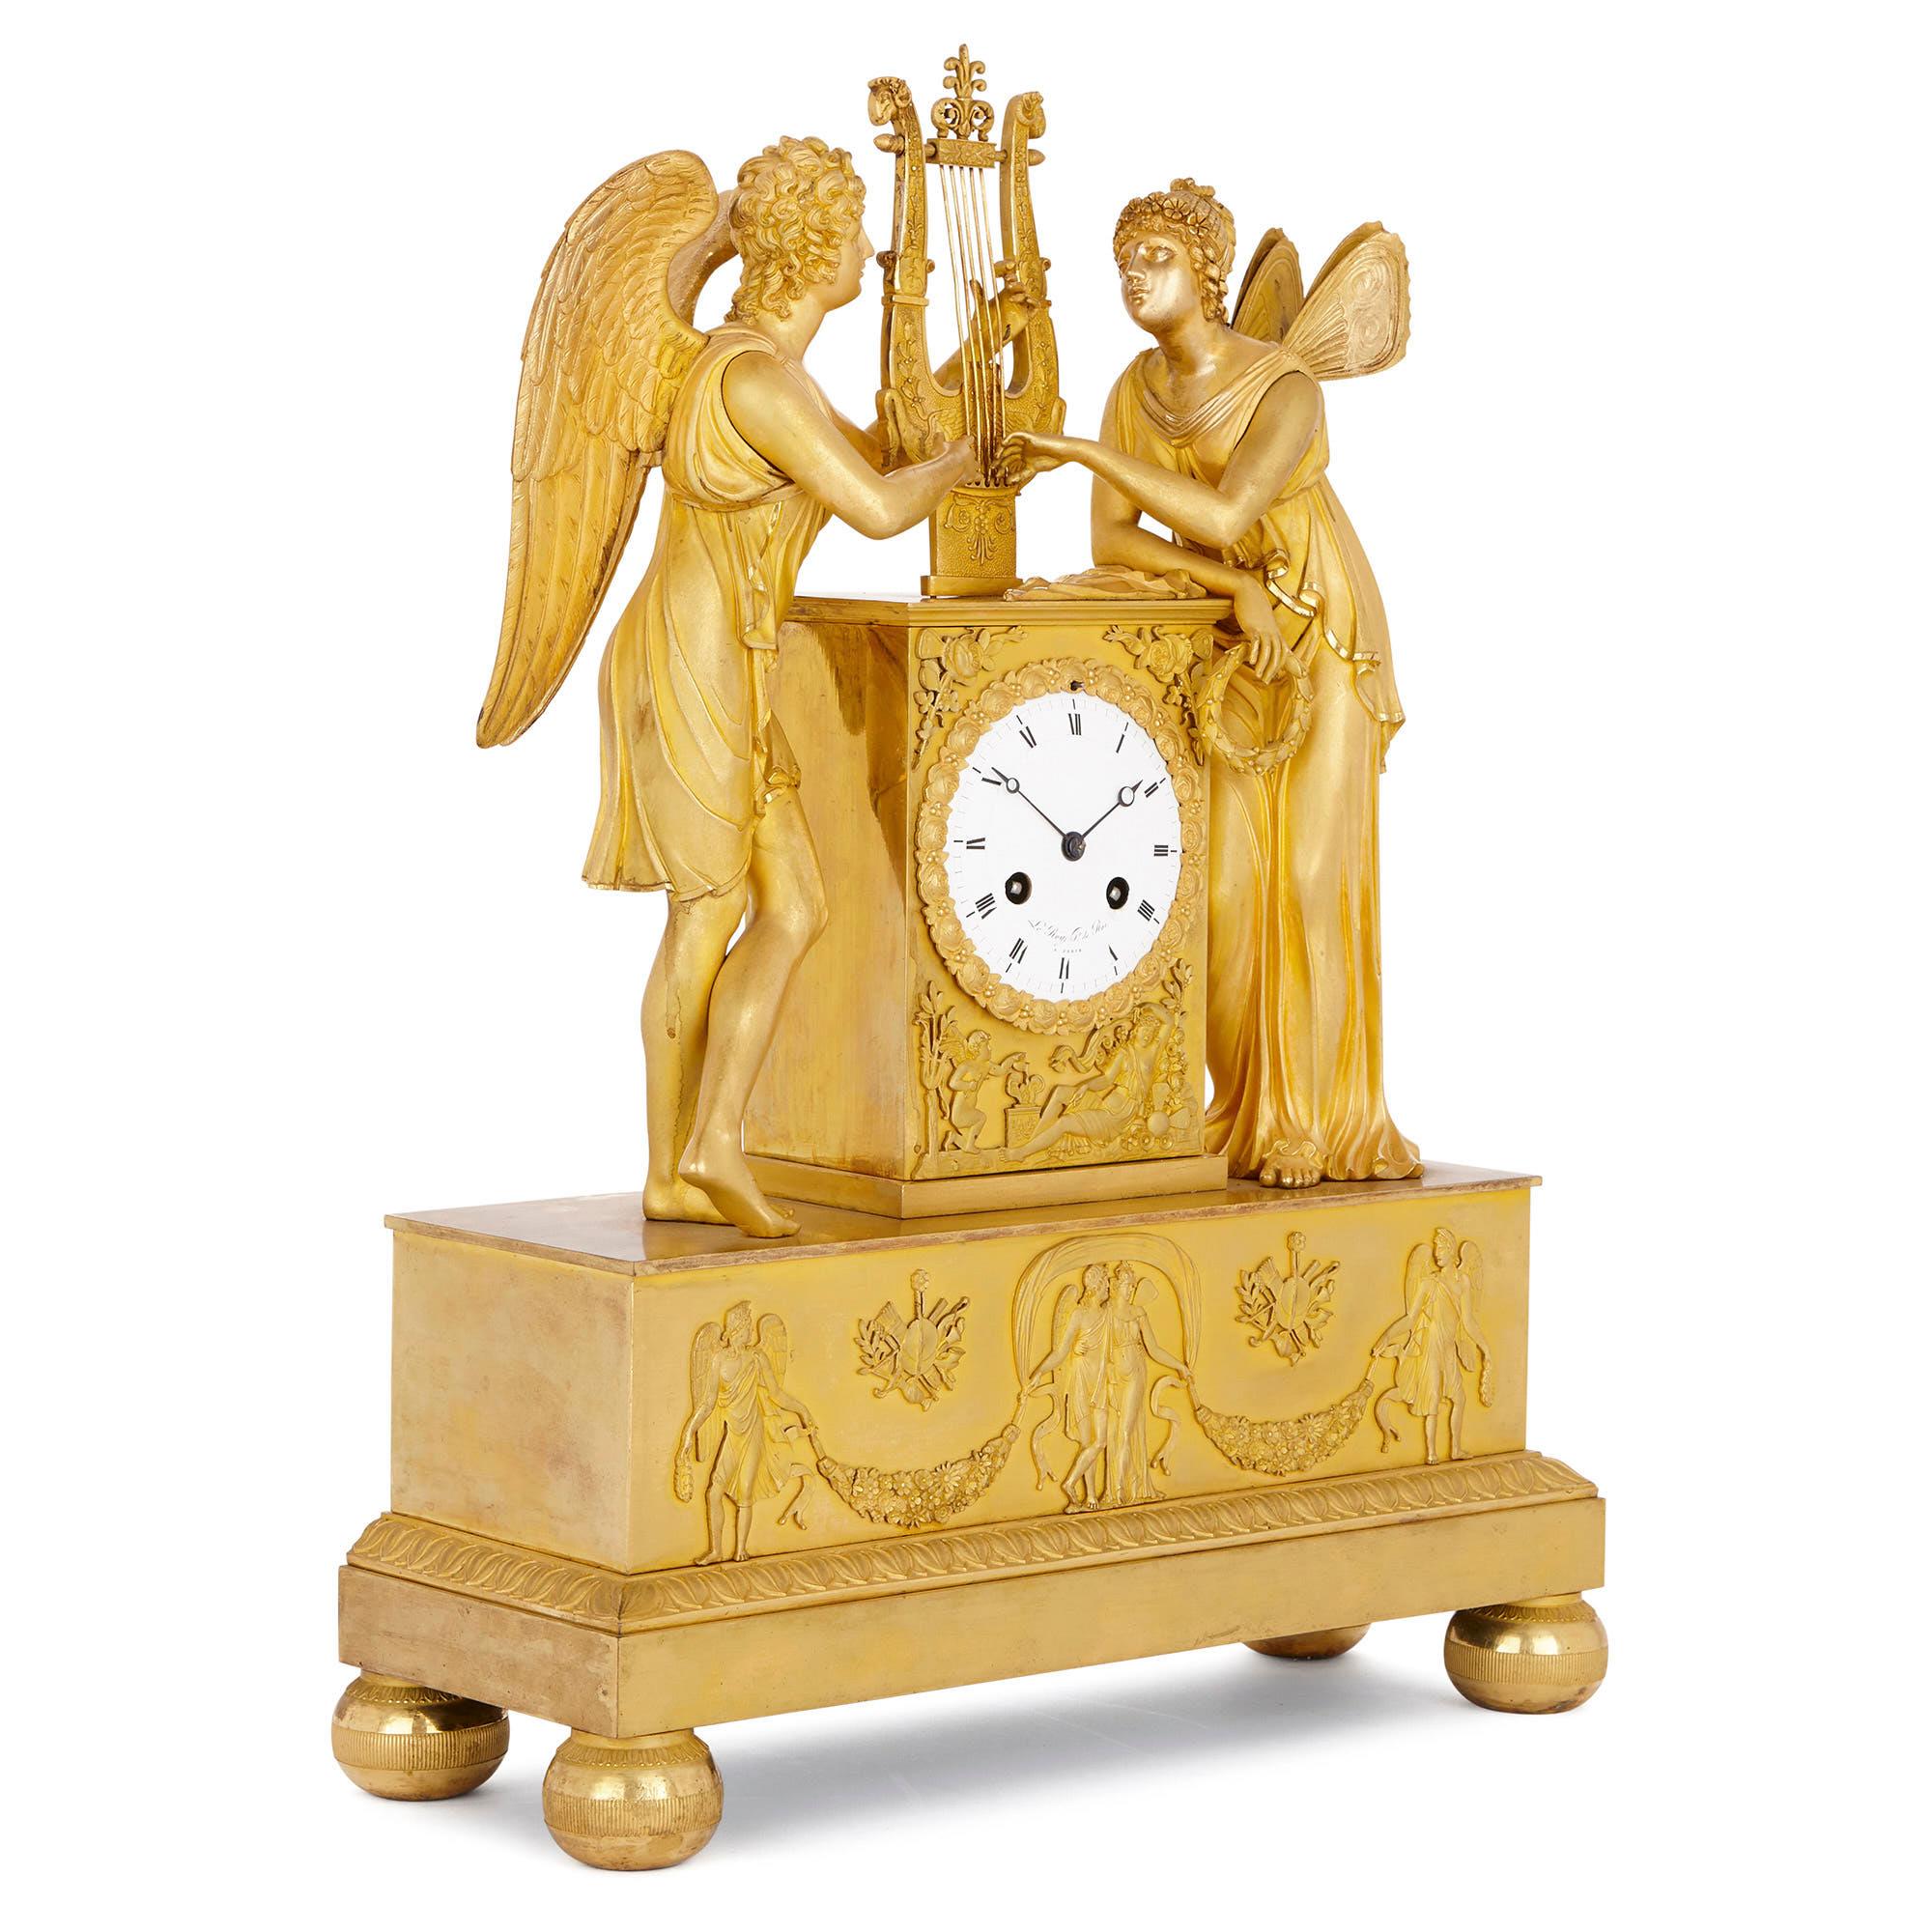 Diese schöne Kaminsimsuhr wurde um 1810 von der berühmten Pariser Uhrenmanufaktur Le Roy et fils hergestellt. Das Unternehmen wurde 1785 von Basile Charles Le Roy gegründet, der es später an seinen Sohn Charles-Louis Le Roy weitergab. Die Firma war